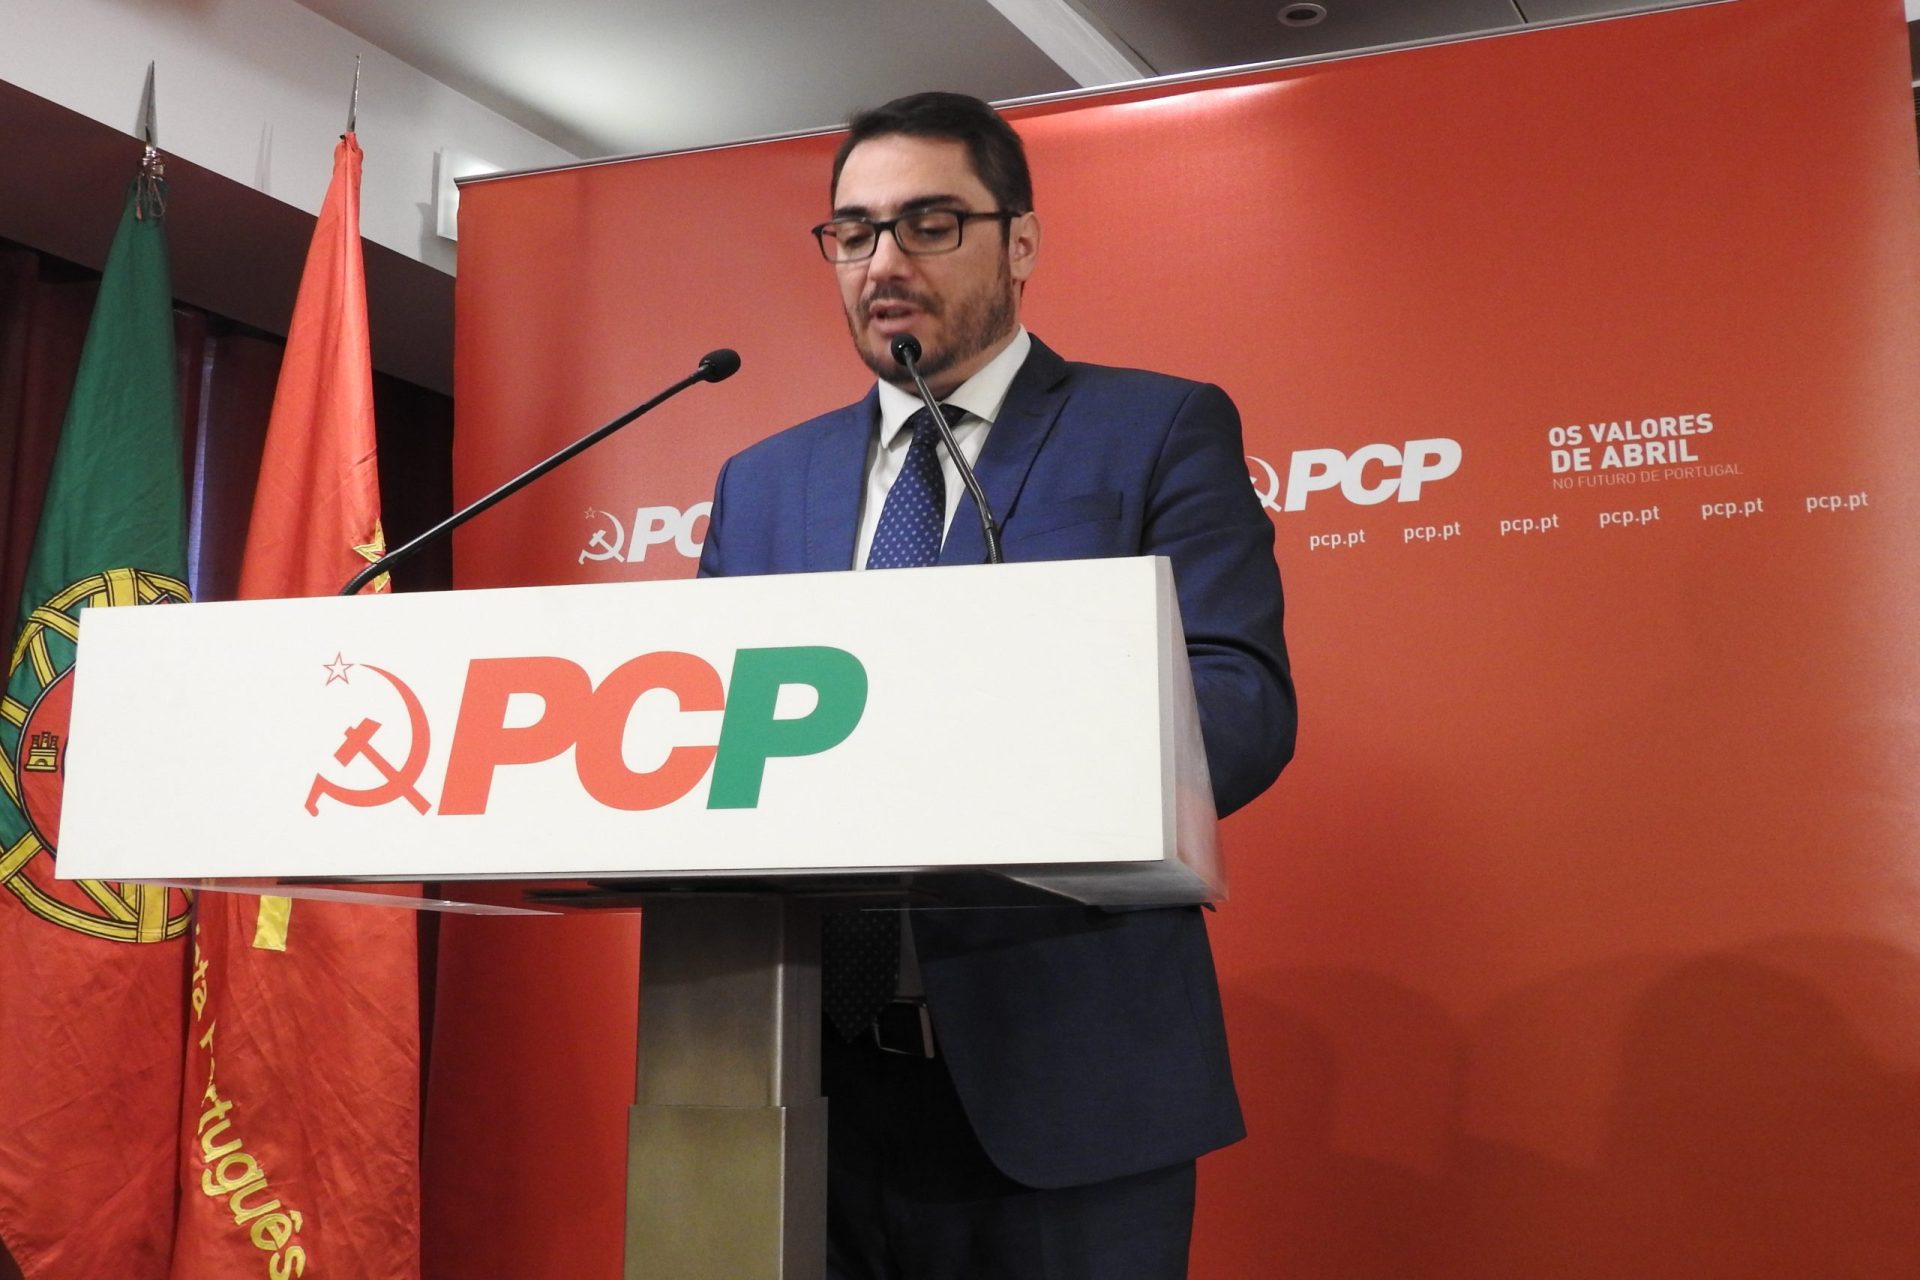 PCP, Bloco e Verdes vão pedir fiscalização sucessiva do novo Código do Trabalho